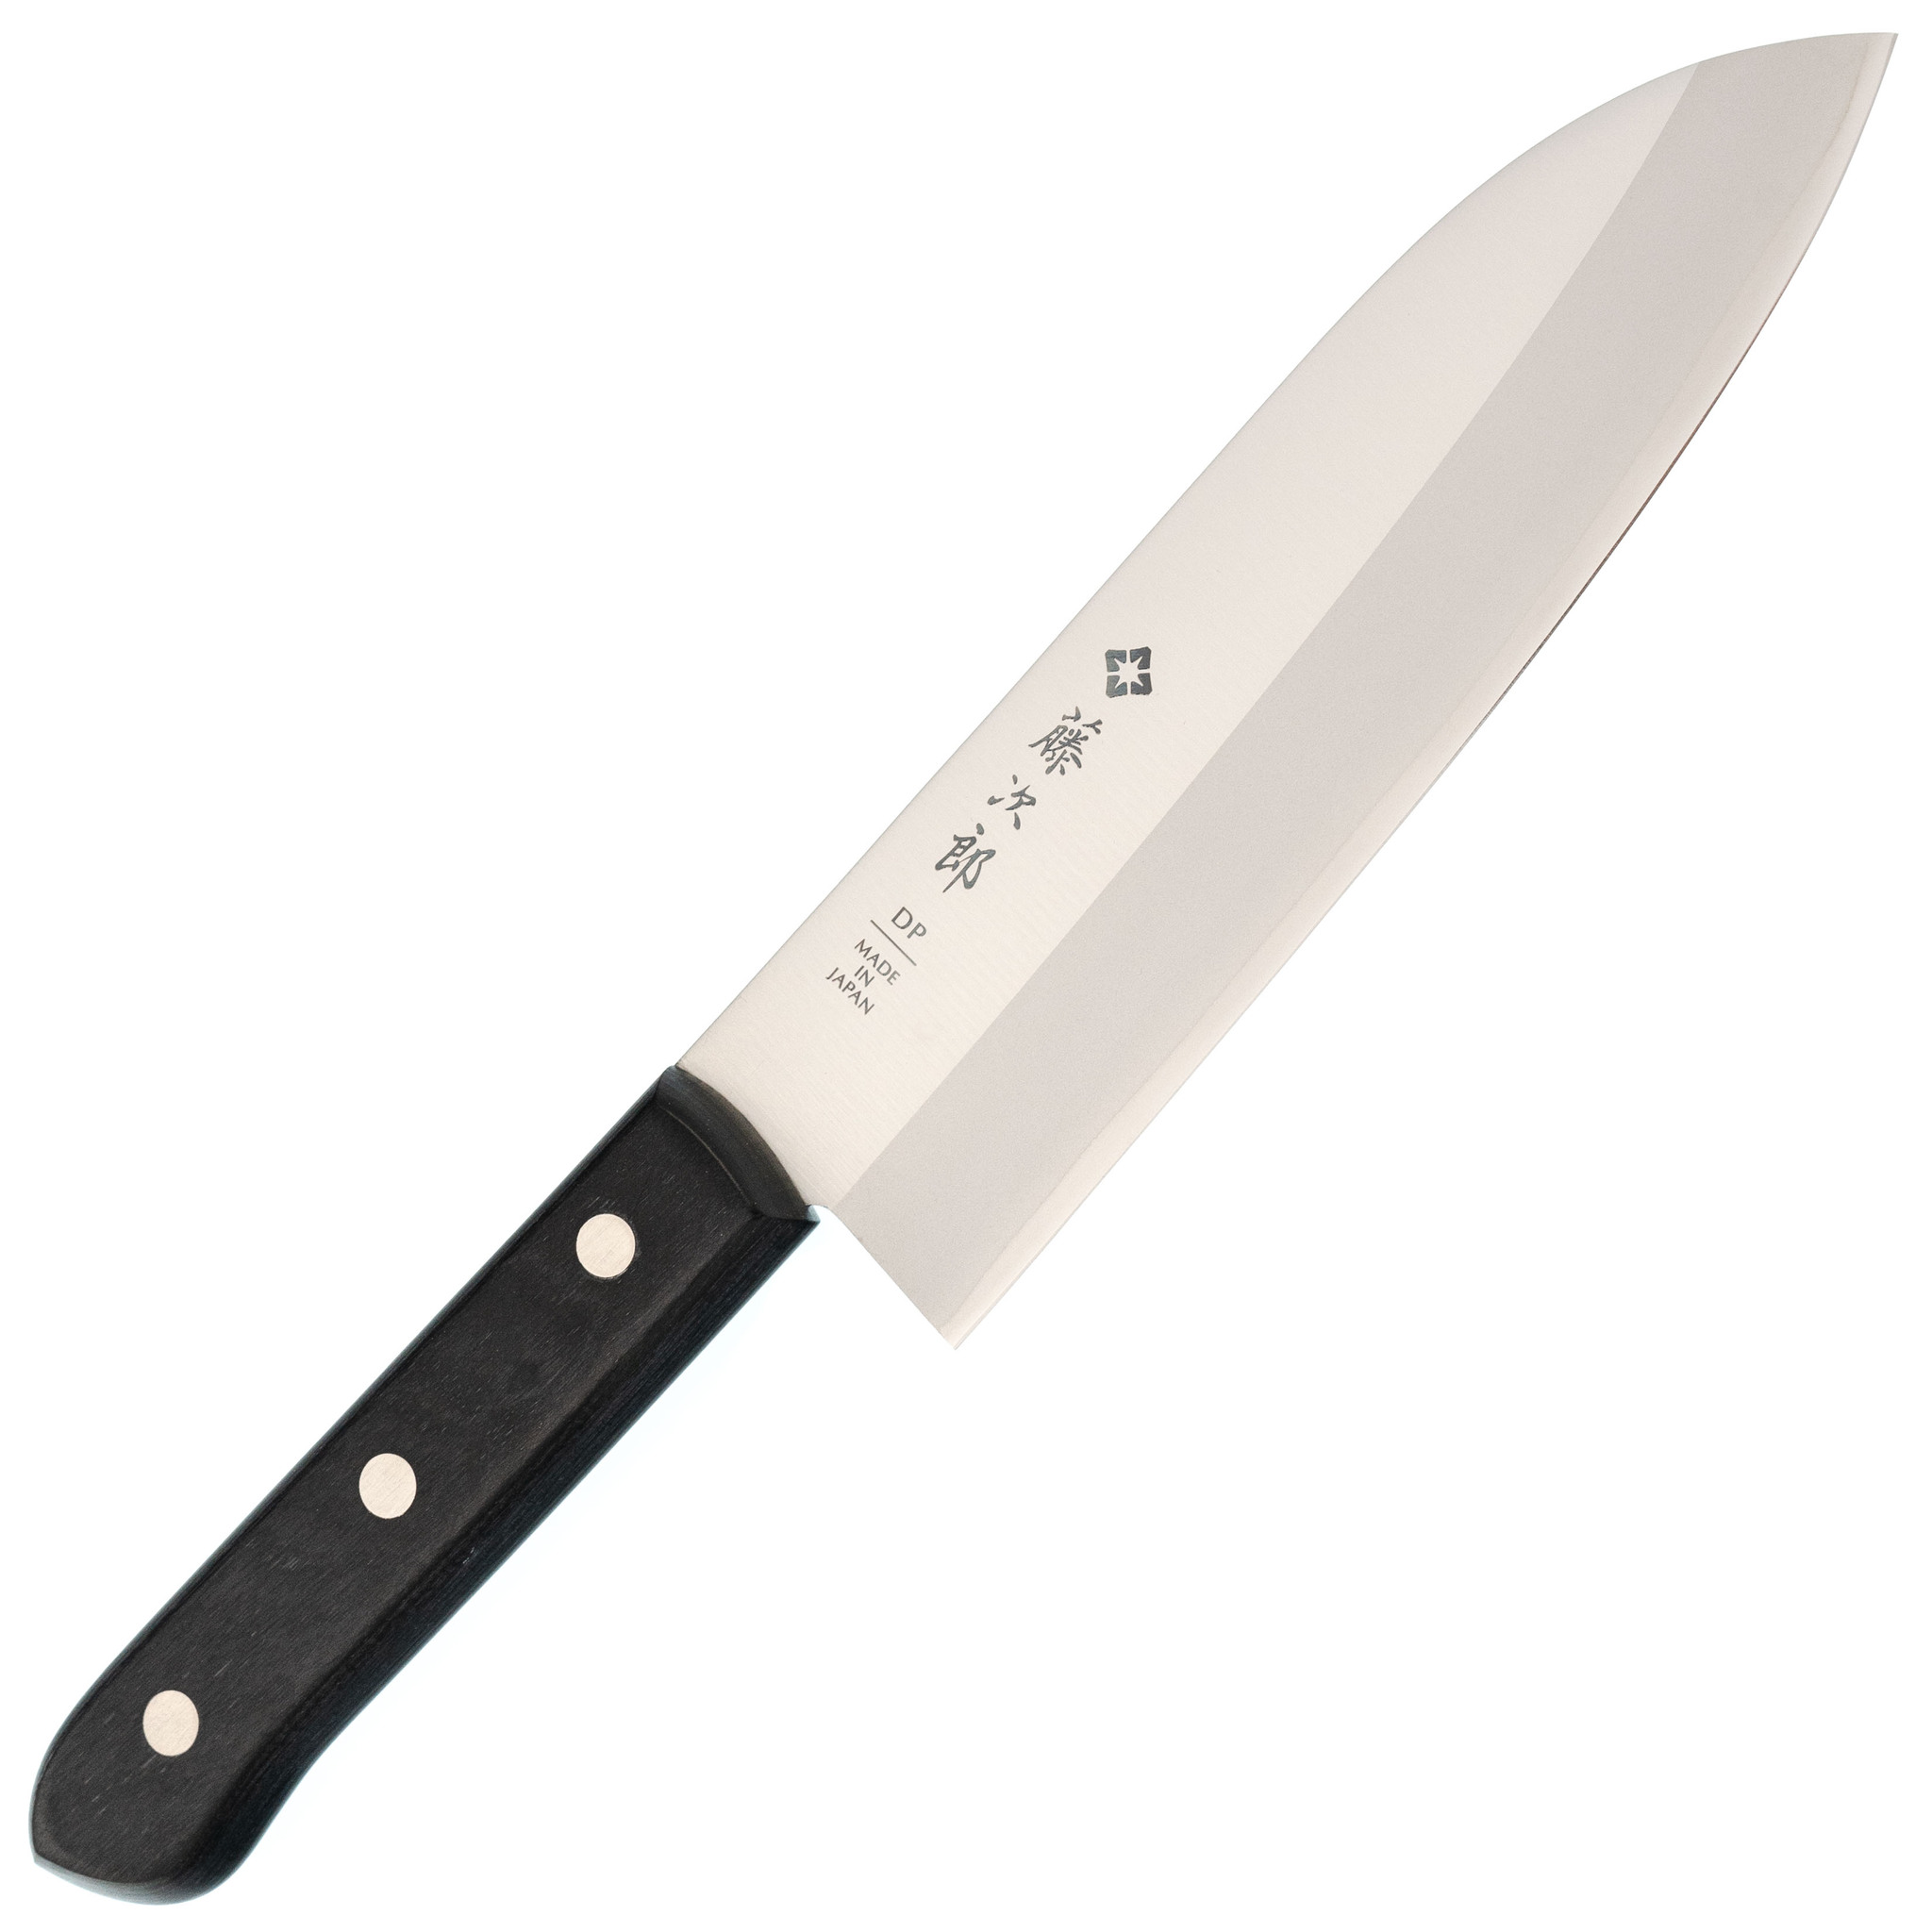 Нож Сантоку Western Knife, Tojiro, F-311, сталь VG-10, чёрный нож кухонный овощной spyderco k09pbk mini paring сталь mbs 26 plain рукоять полипропилен чёрный